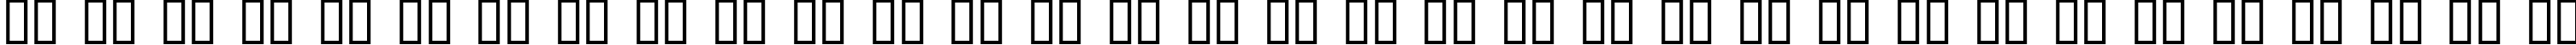 Пример написания русского алфавита шрифтом PanAm Text